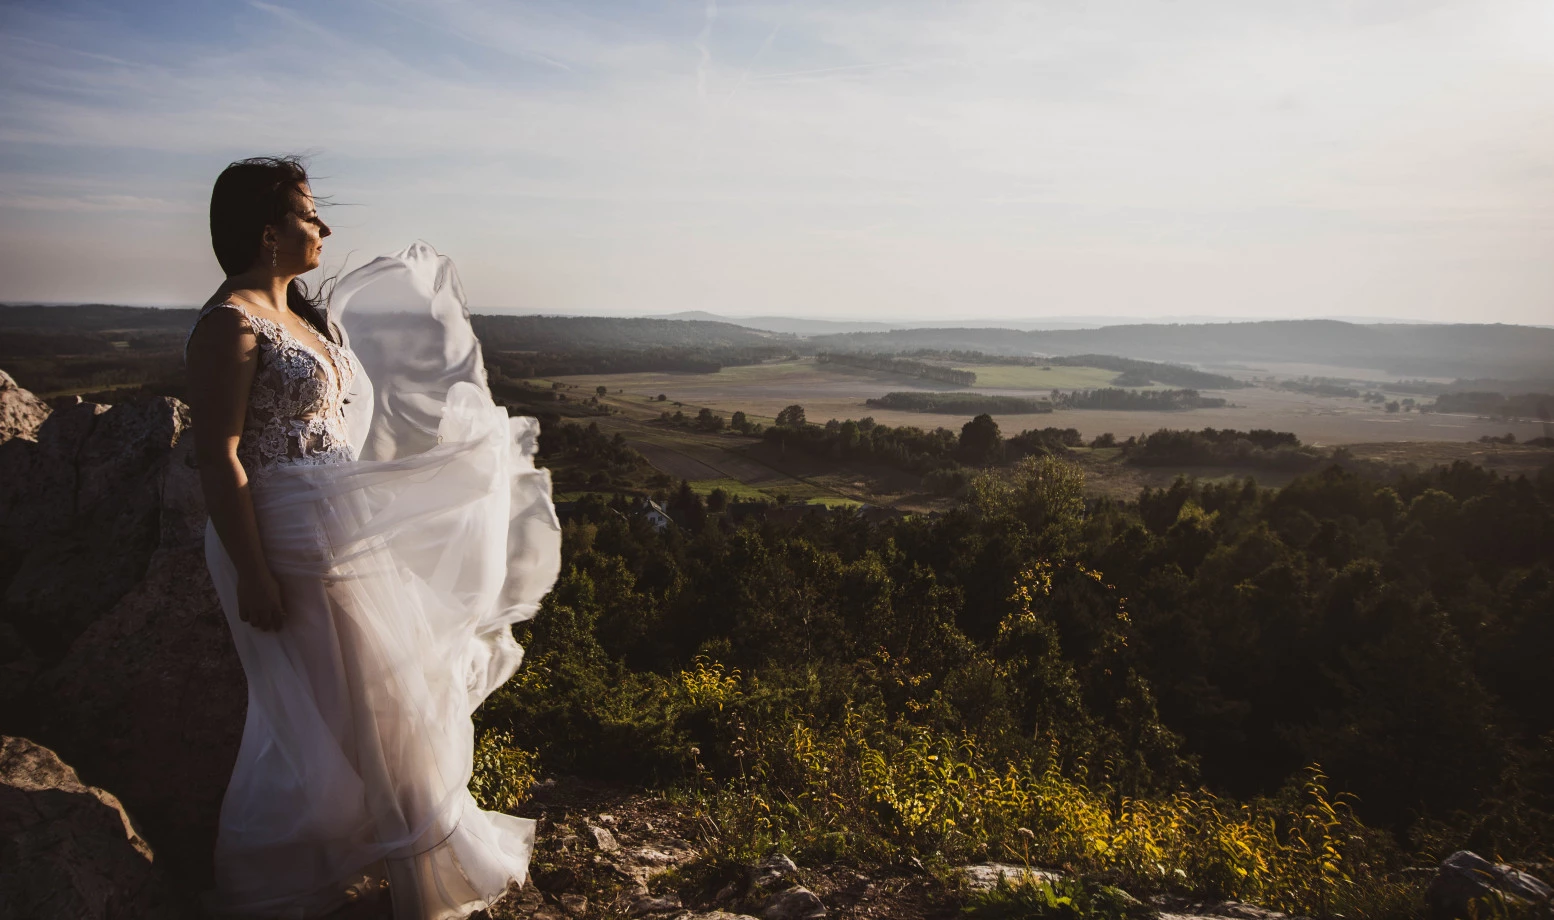 fotograf polaniec mariusz-zalesny portfolio zdjecia slubne inspiracje wesele plener slubny sesja slubna